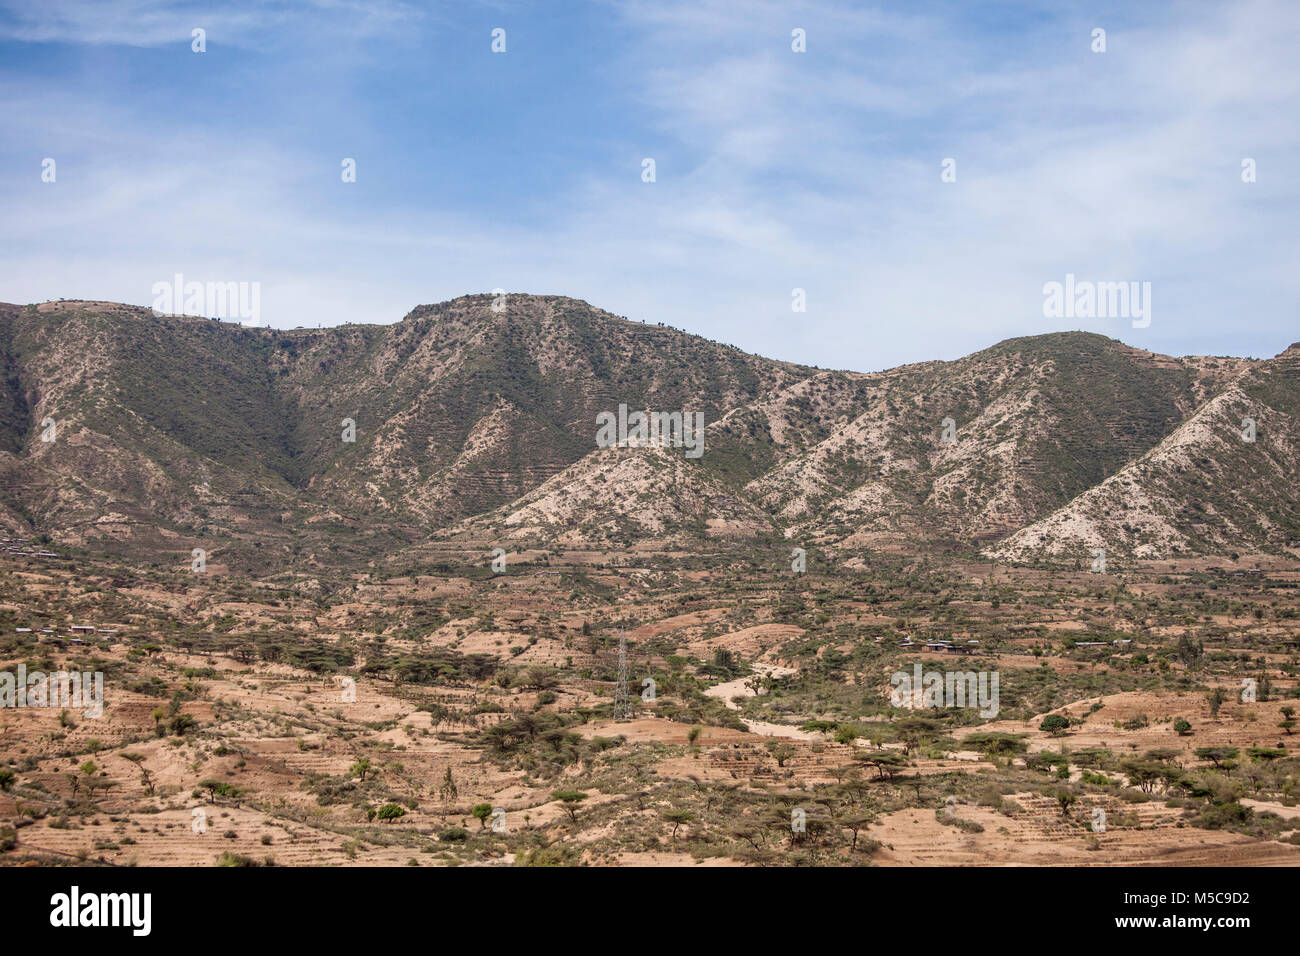 Mountain village in Ethiopia near the Somali Border Stock Photo